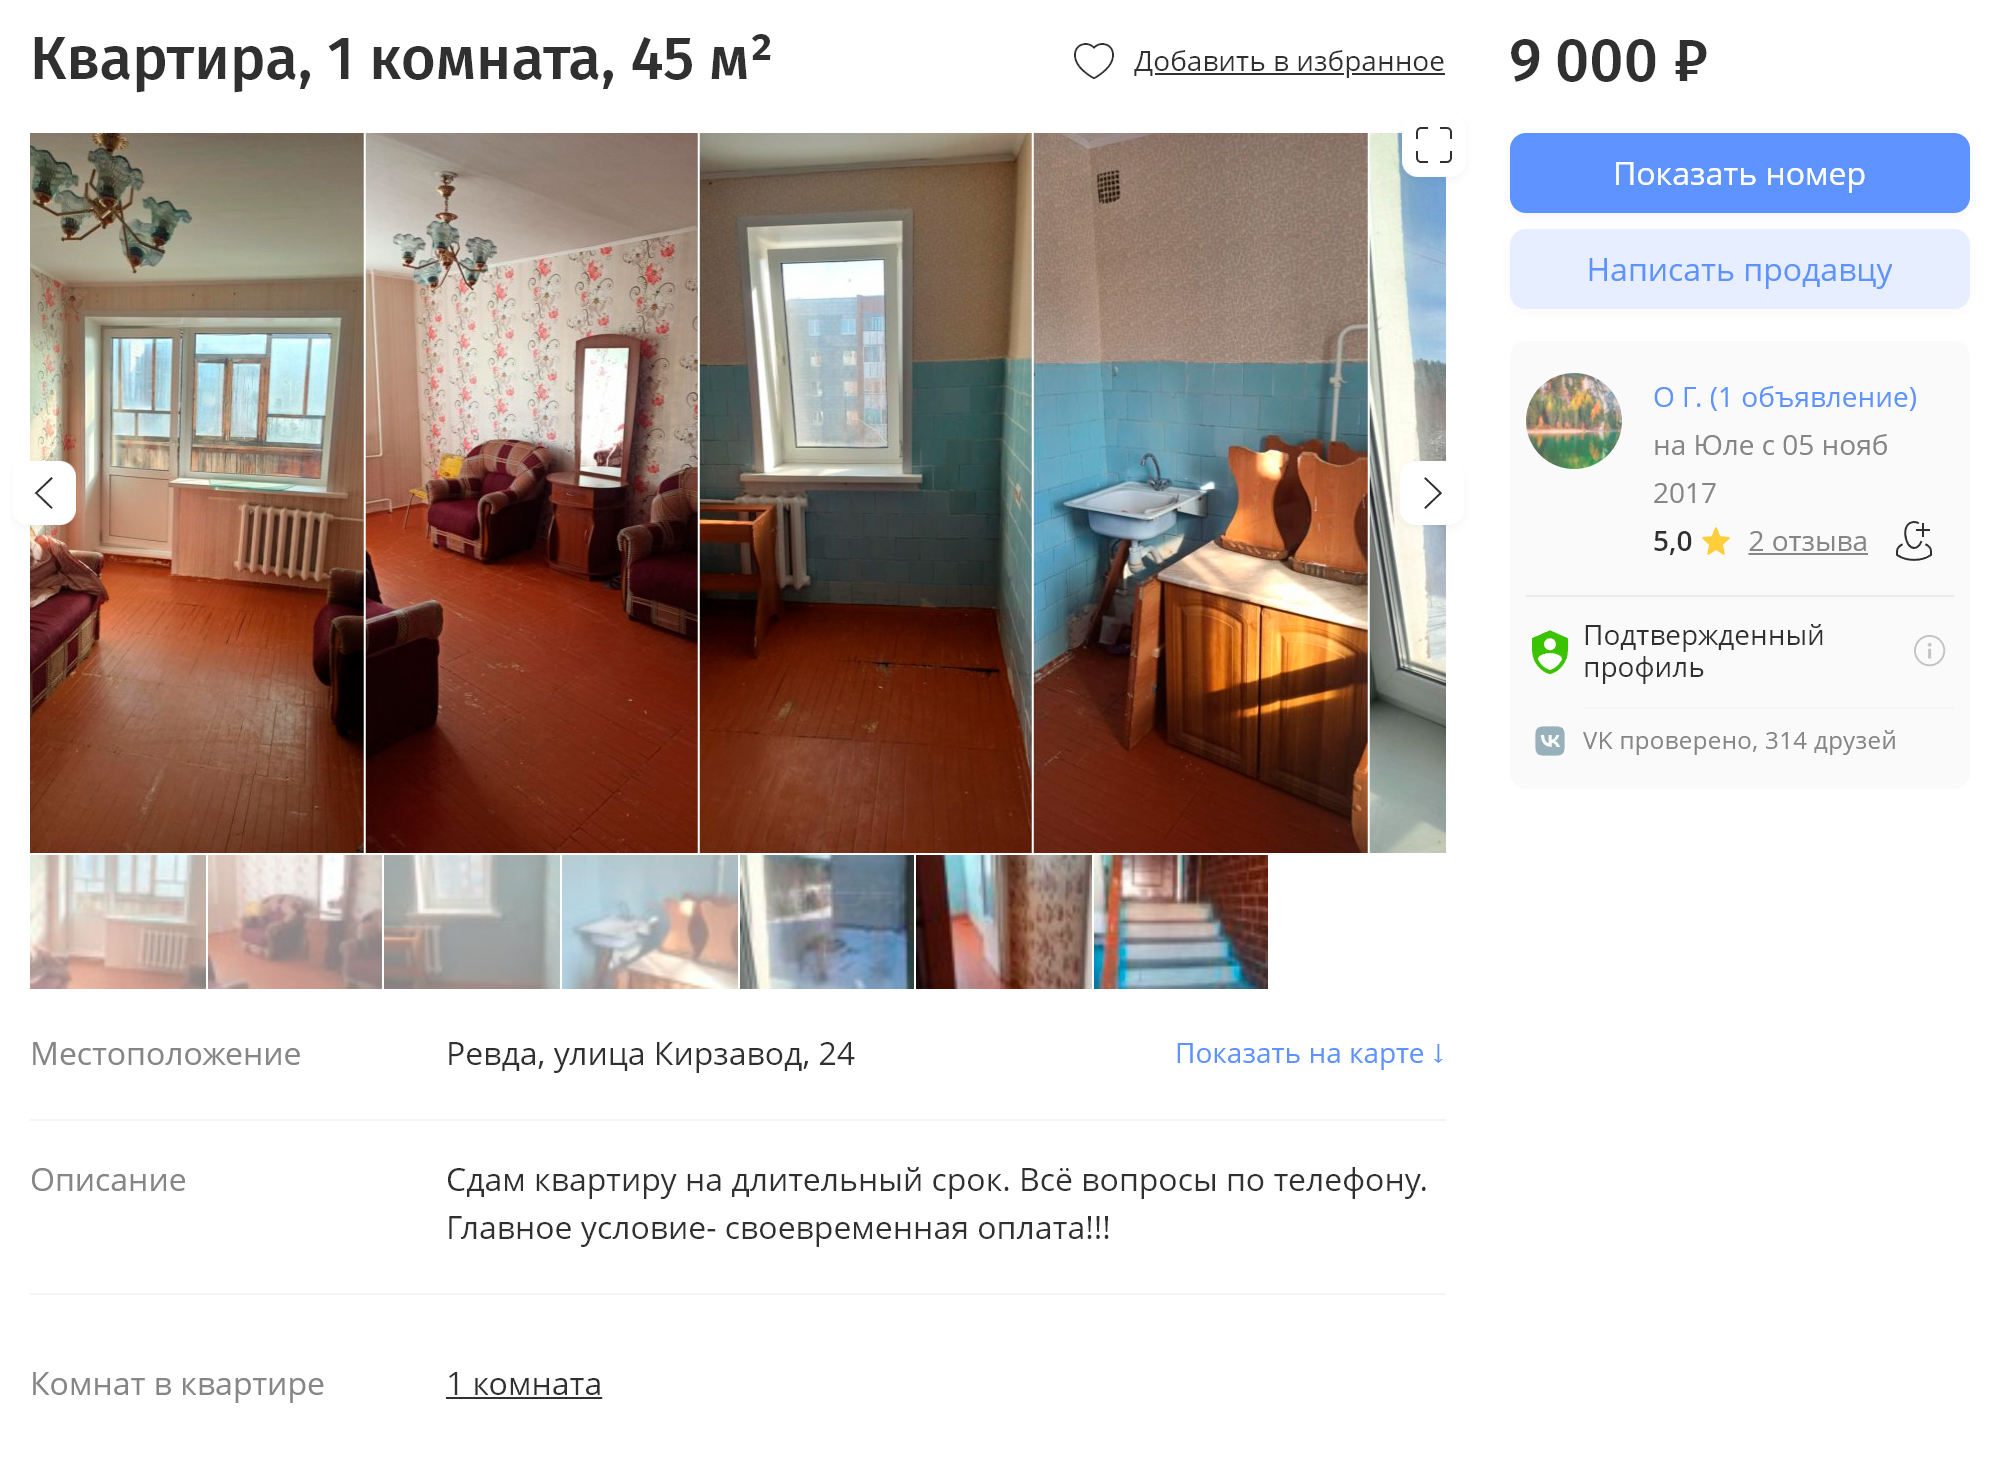 Эта квартира находится в отдаленном от центра Кирзаводе. За нее просят 9000 ₽. Цена настолько мала из⁠-⁠за удаленности района. Источник: youla.ru